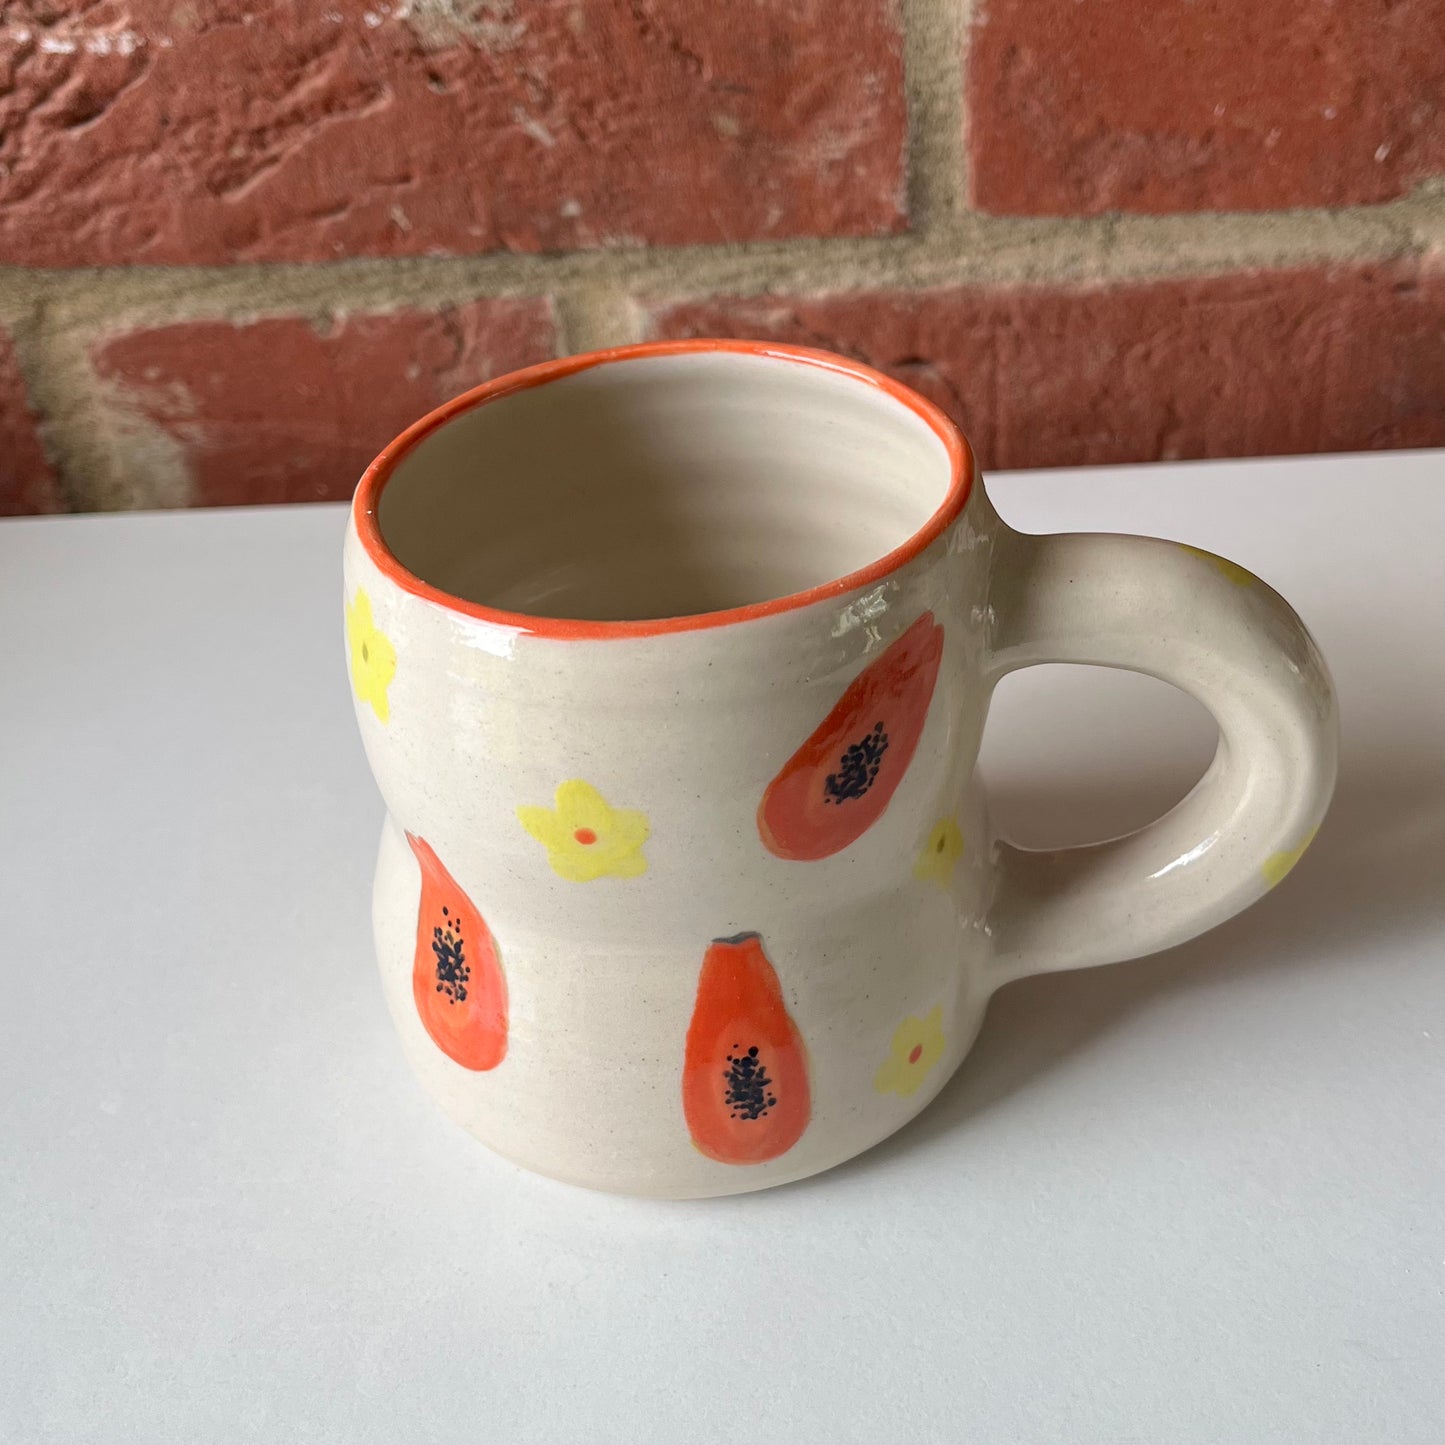 Olivia's papaya mug